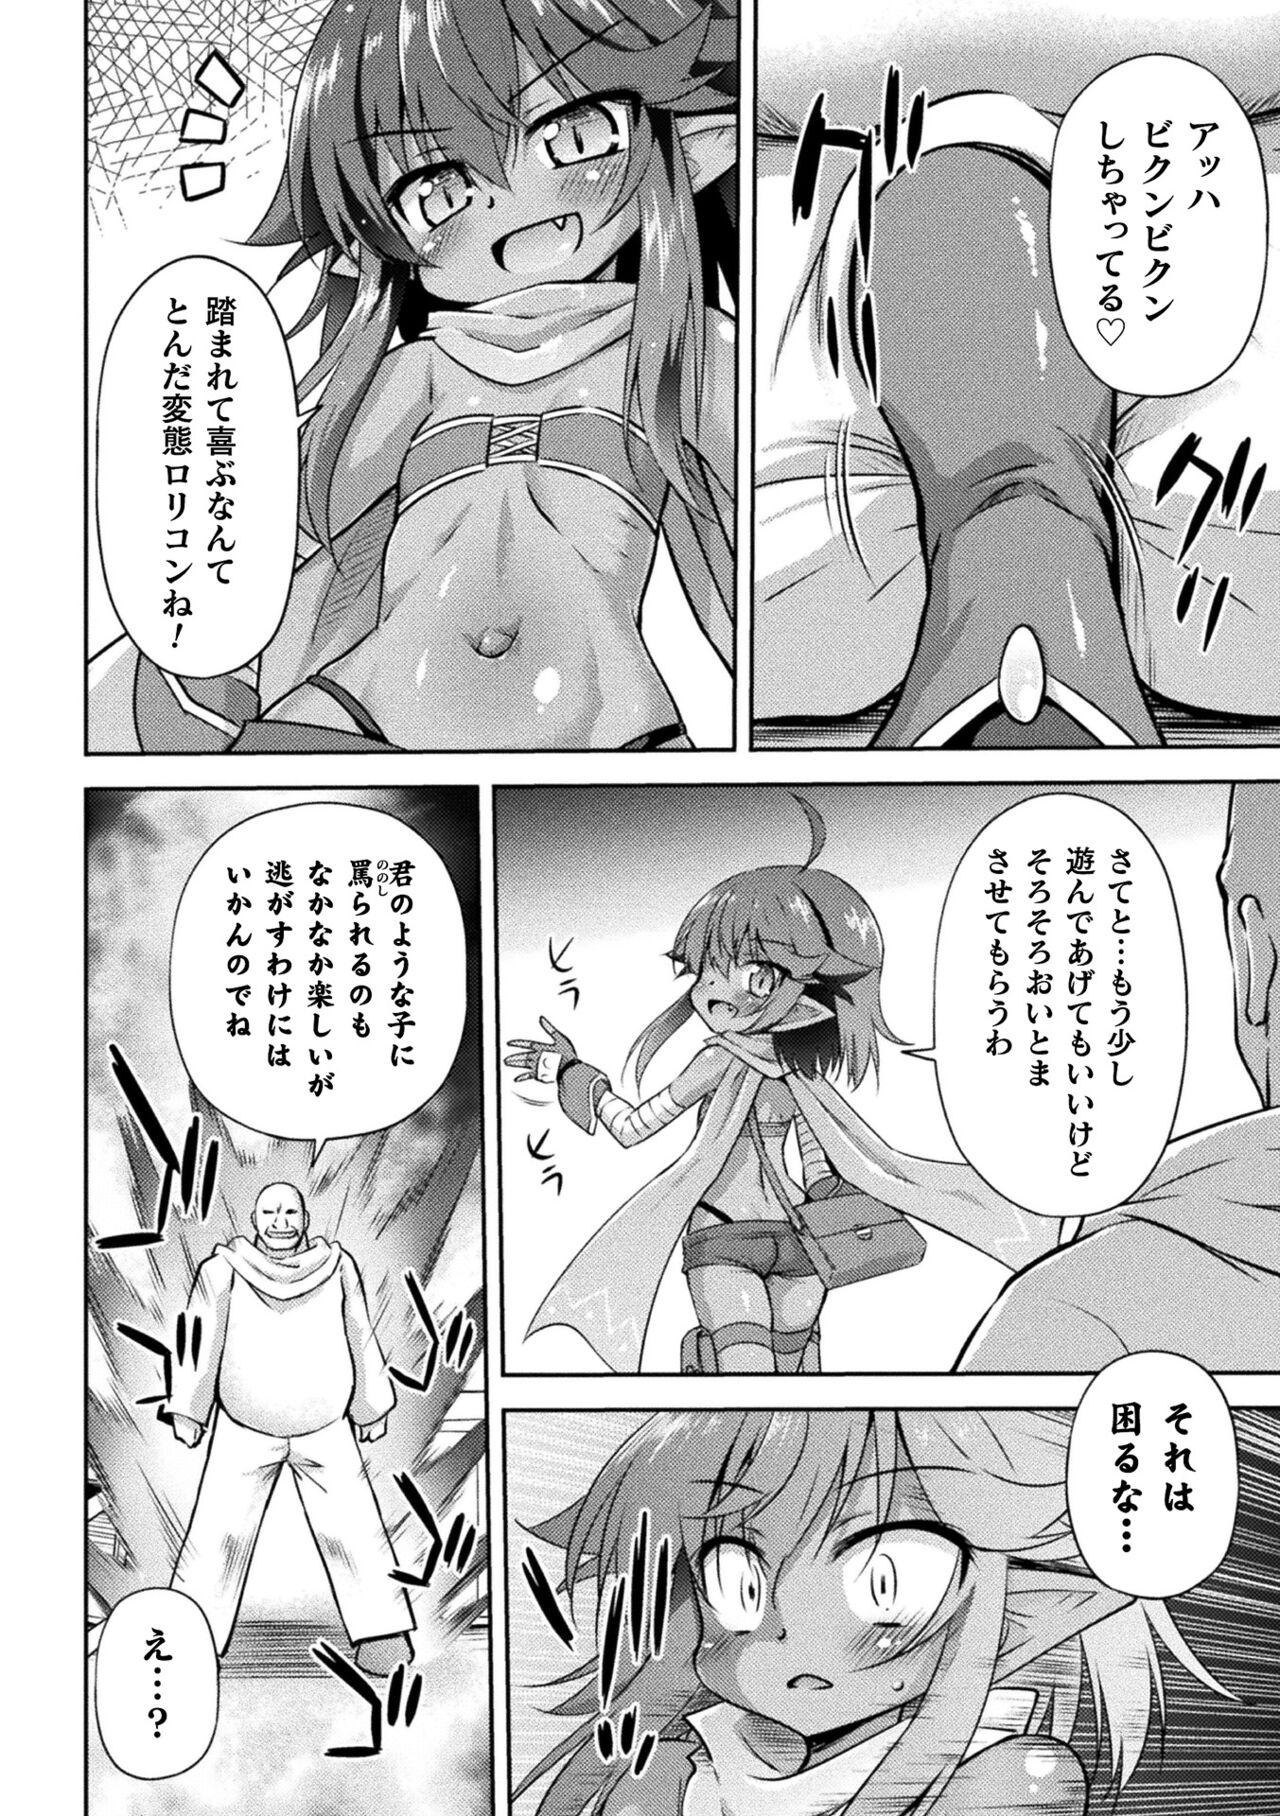 Stripping 2D Comic Magazine Mesugaki Haramase Seisai! Wakarase Chakushou de Omedeta Mama Debut Vol. 2 Mamadas - Page 6